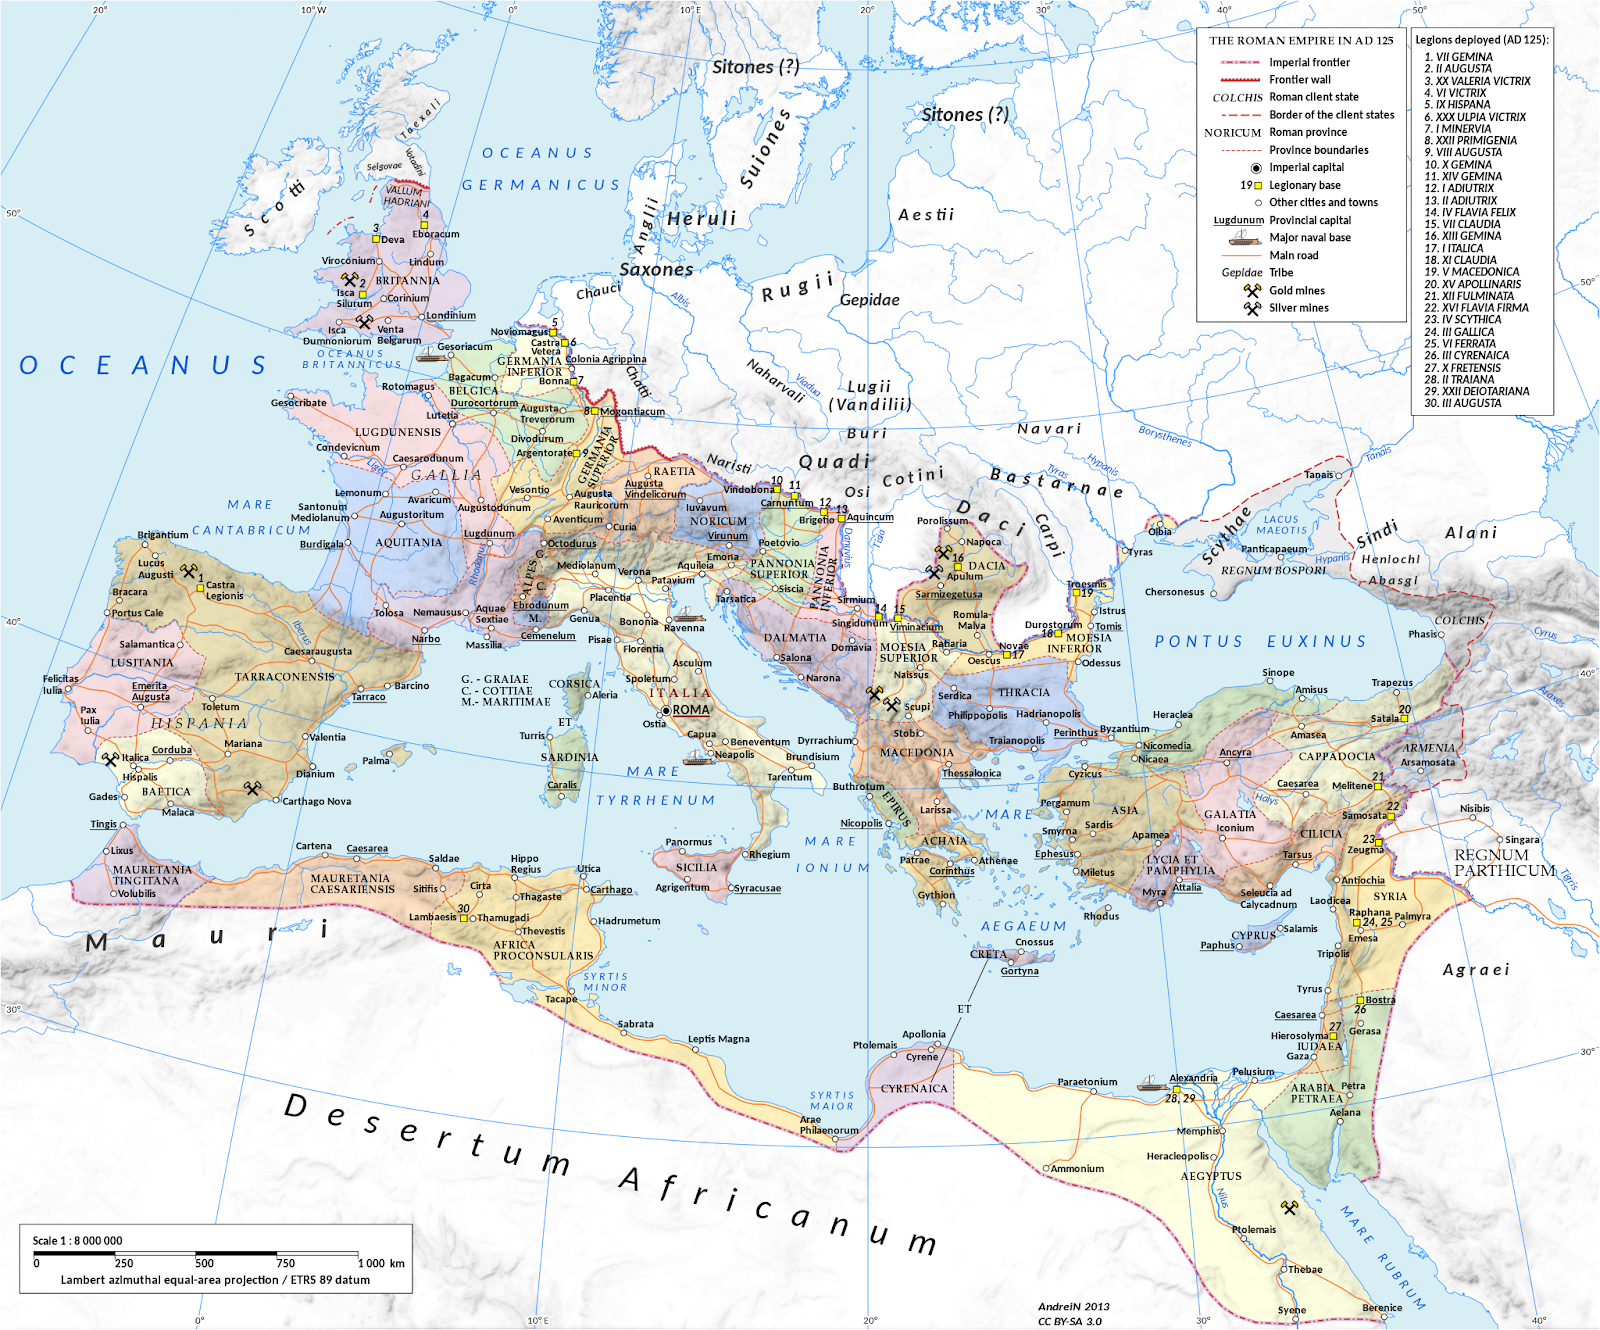 Quando o Império Romano atingiu o seu auge?